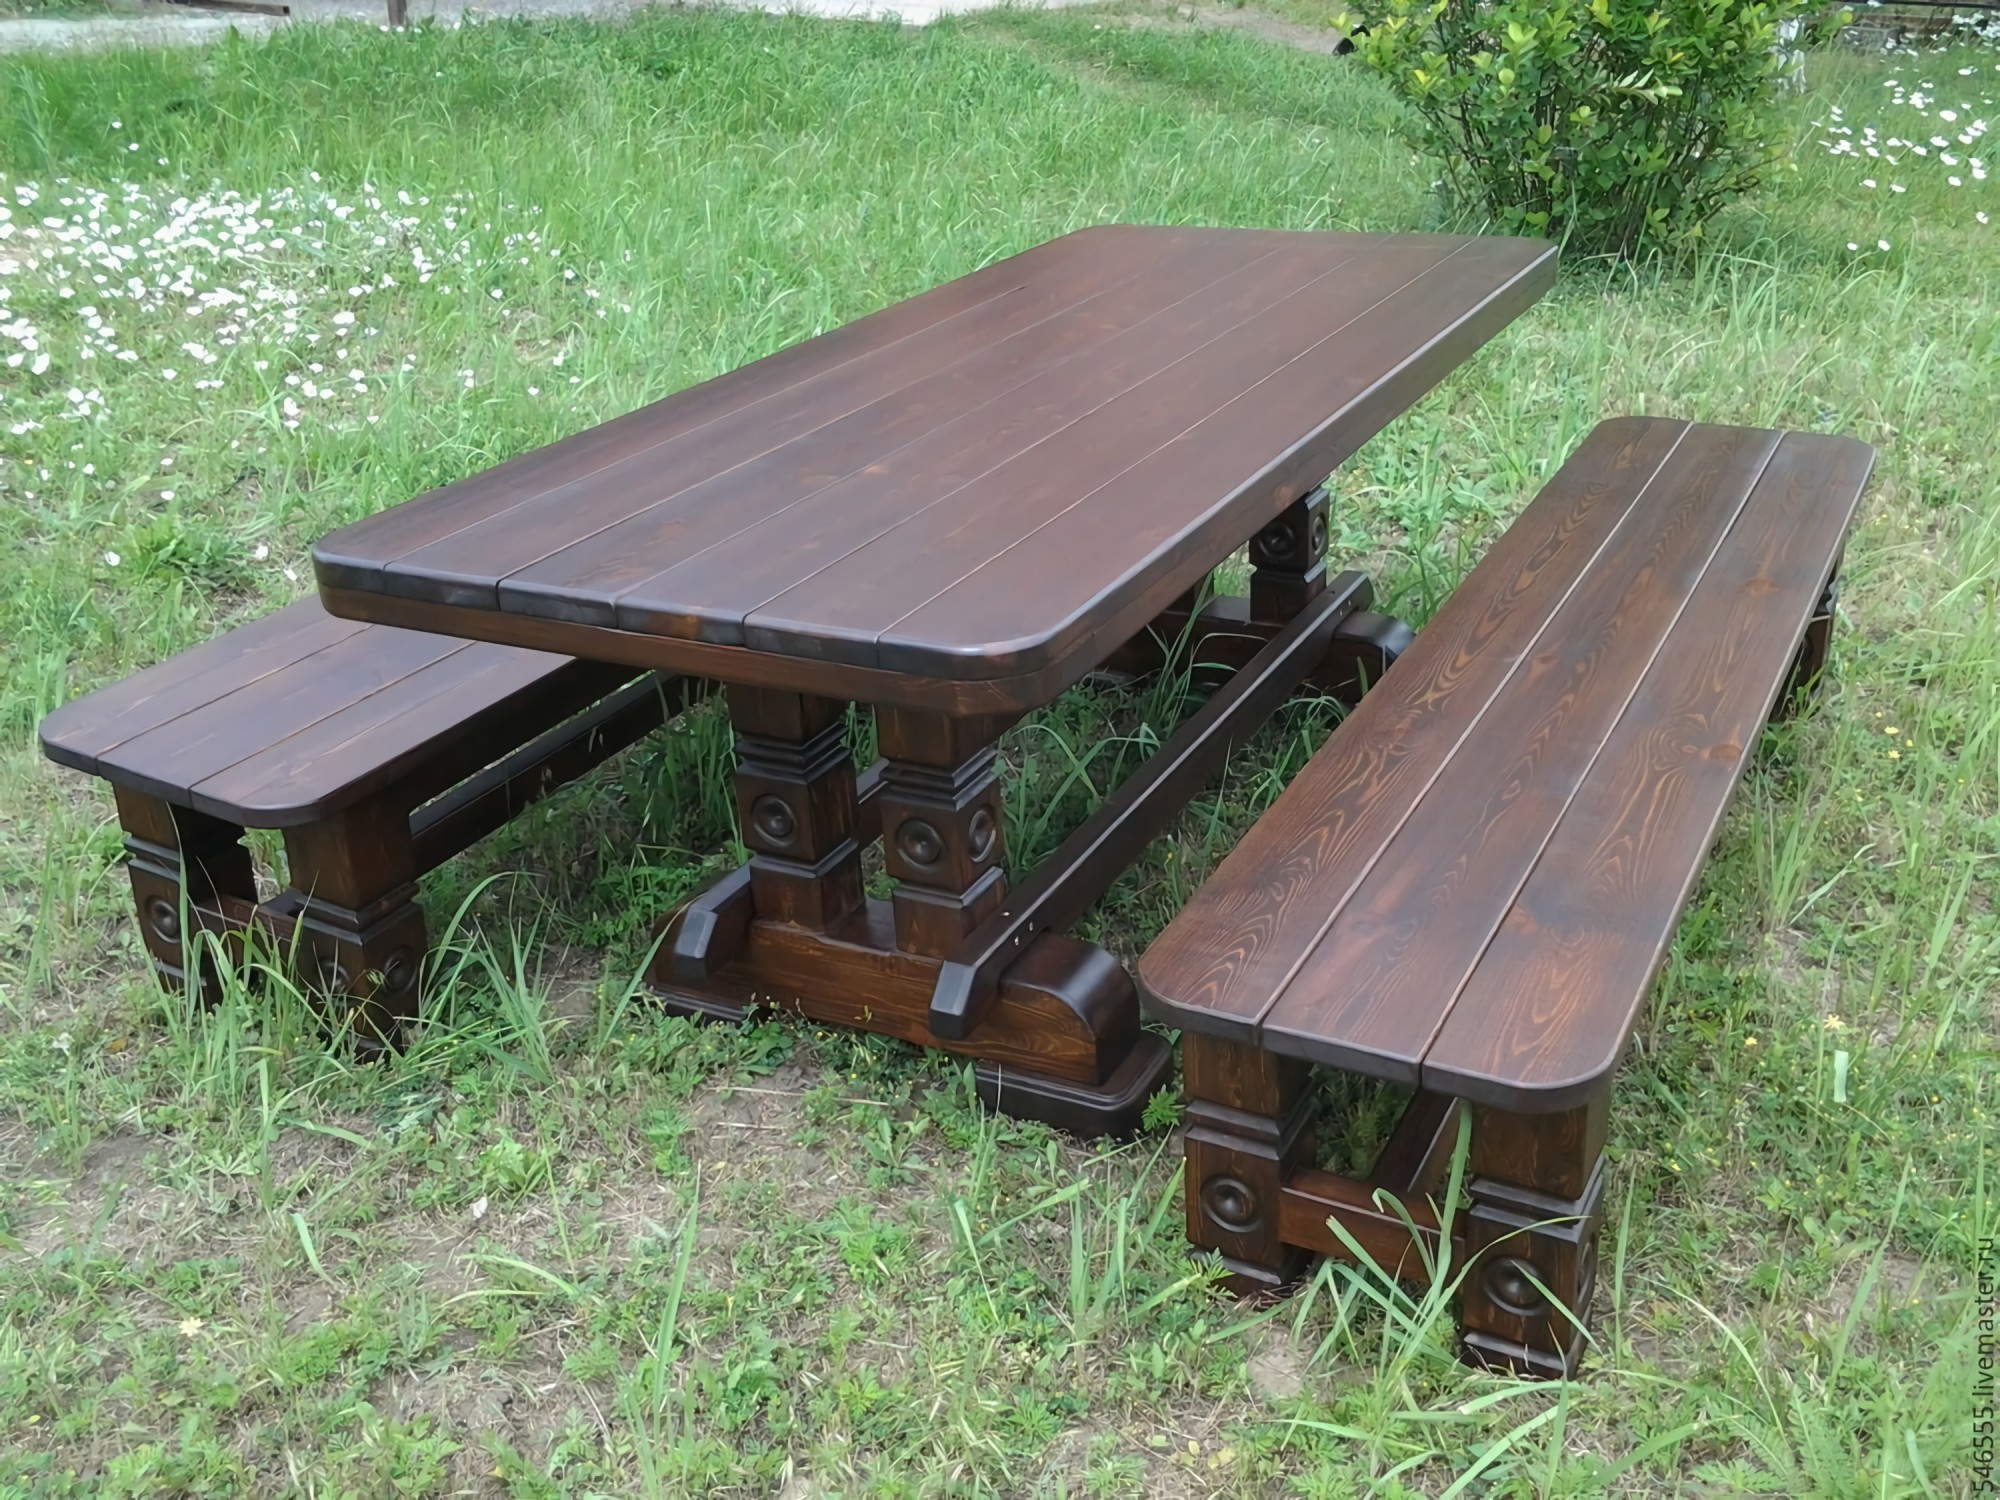 деревянный стол и лавочки